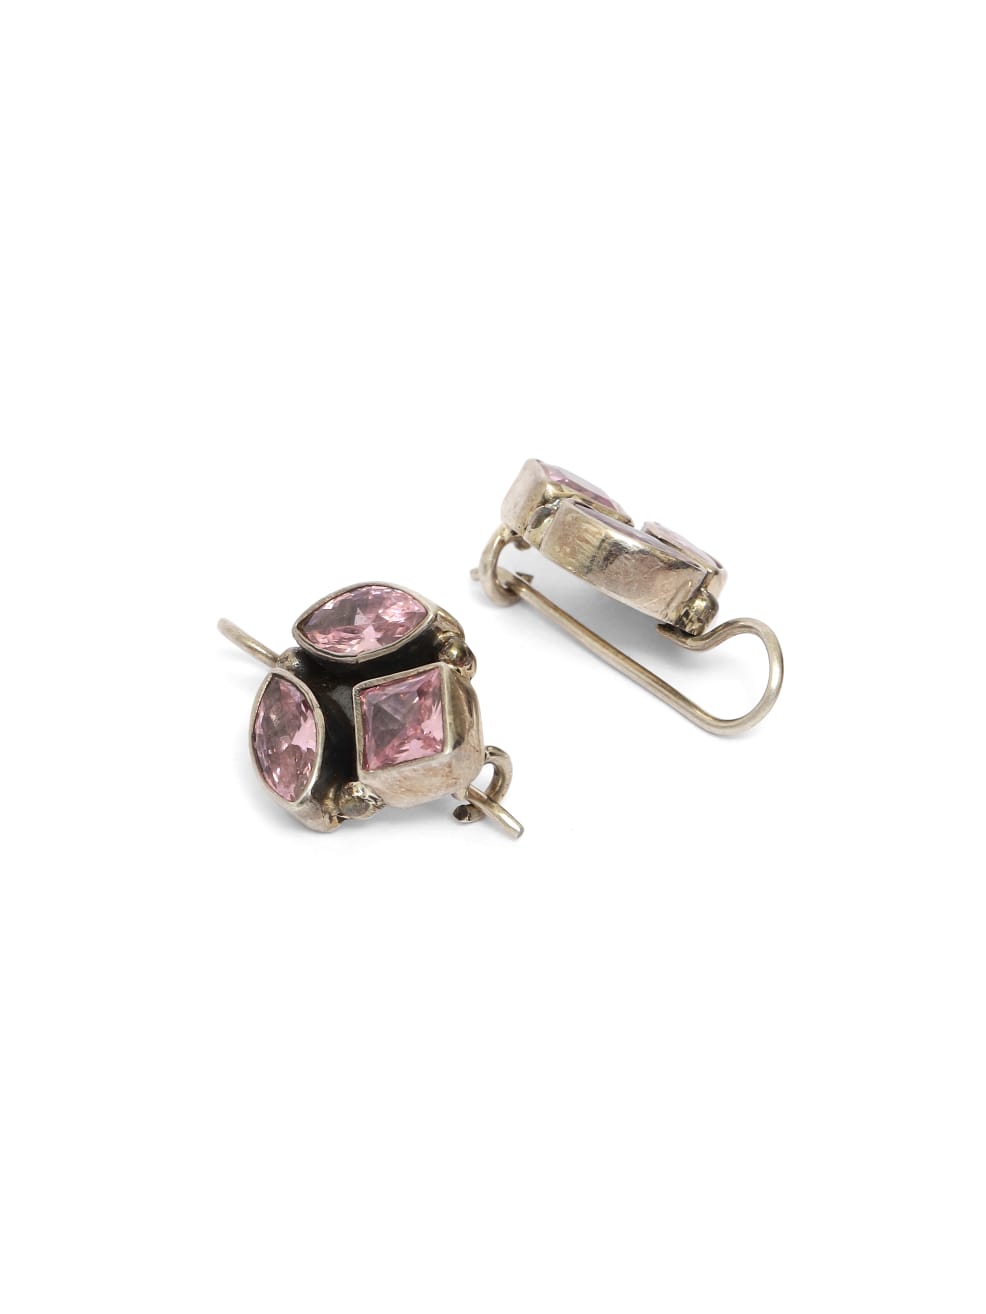 92.5 silver hook earrings with cubic Zircon.